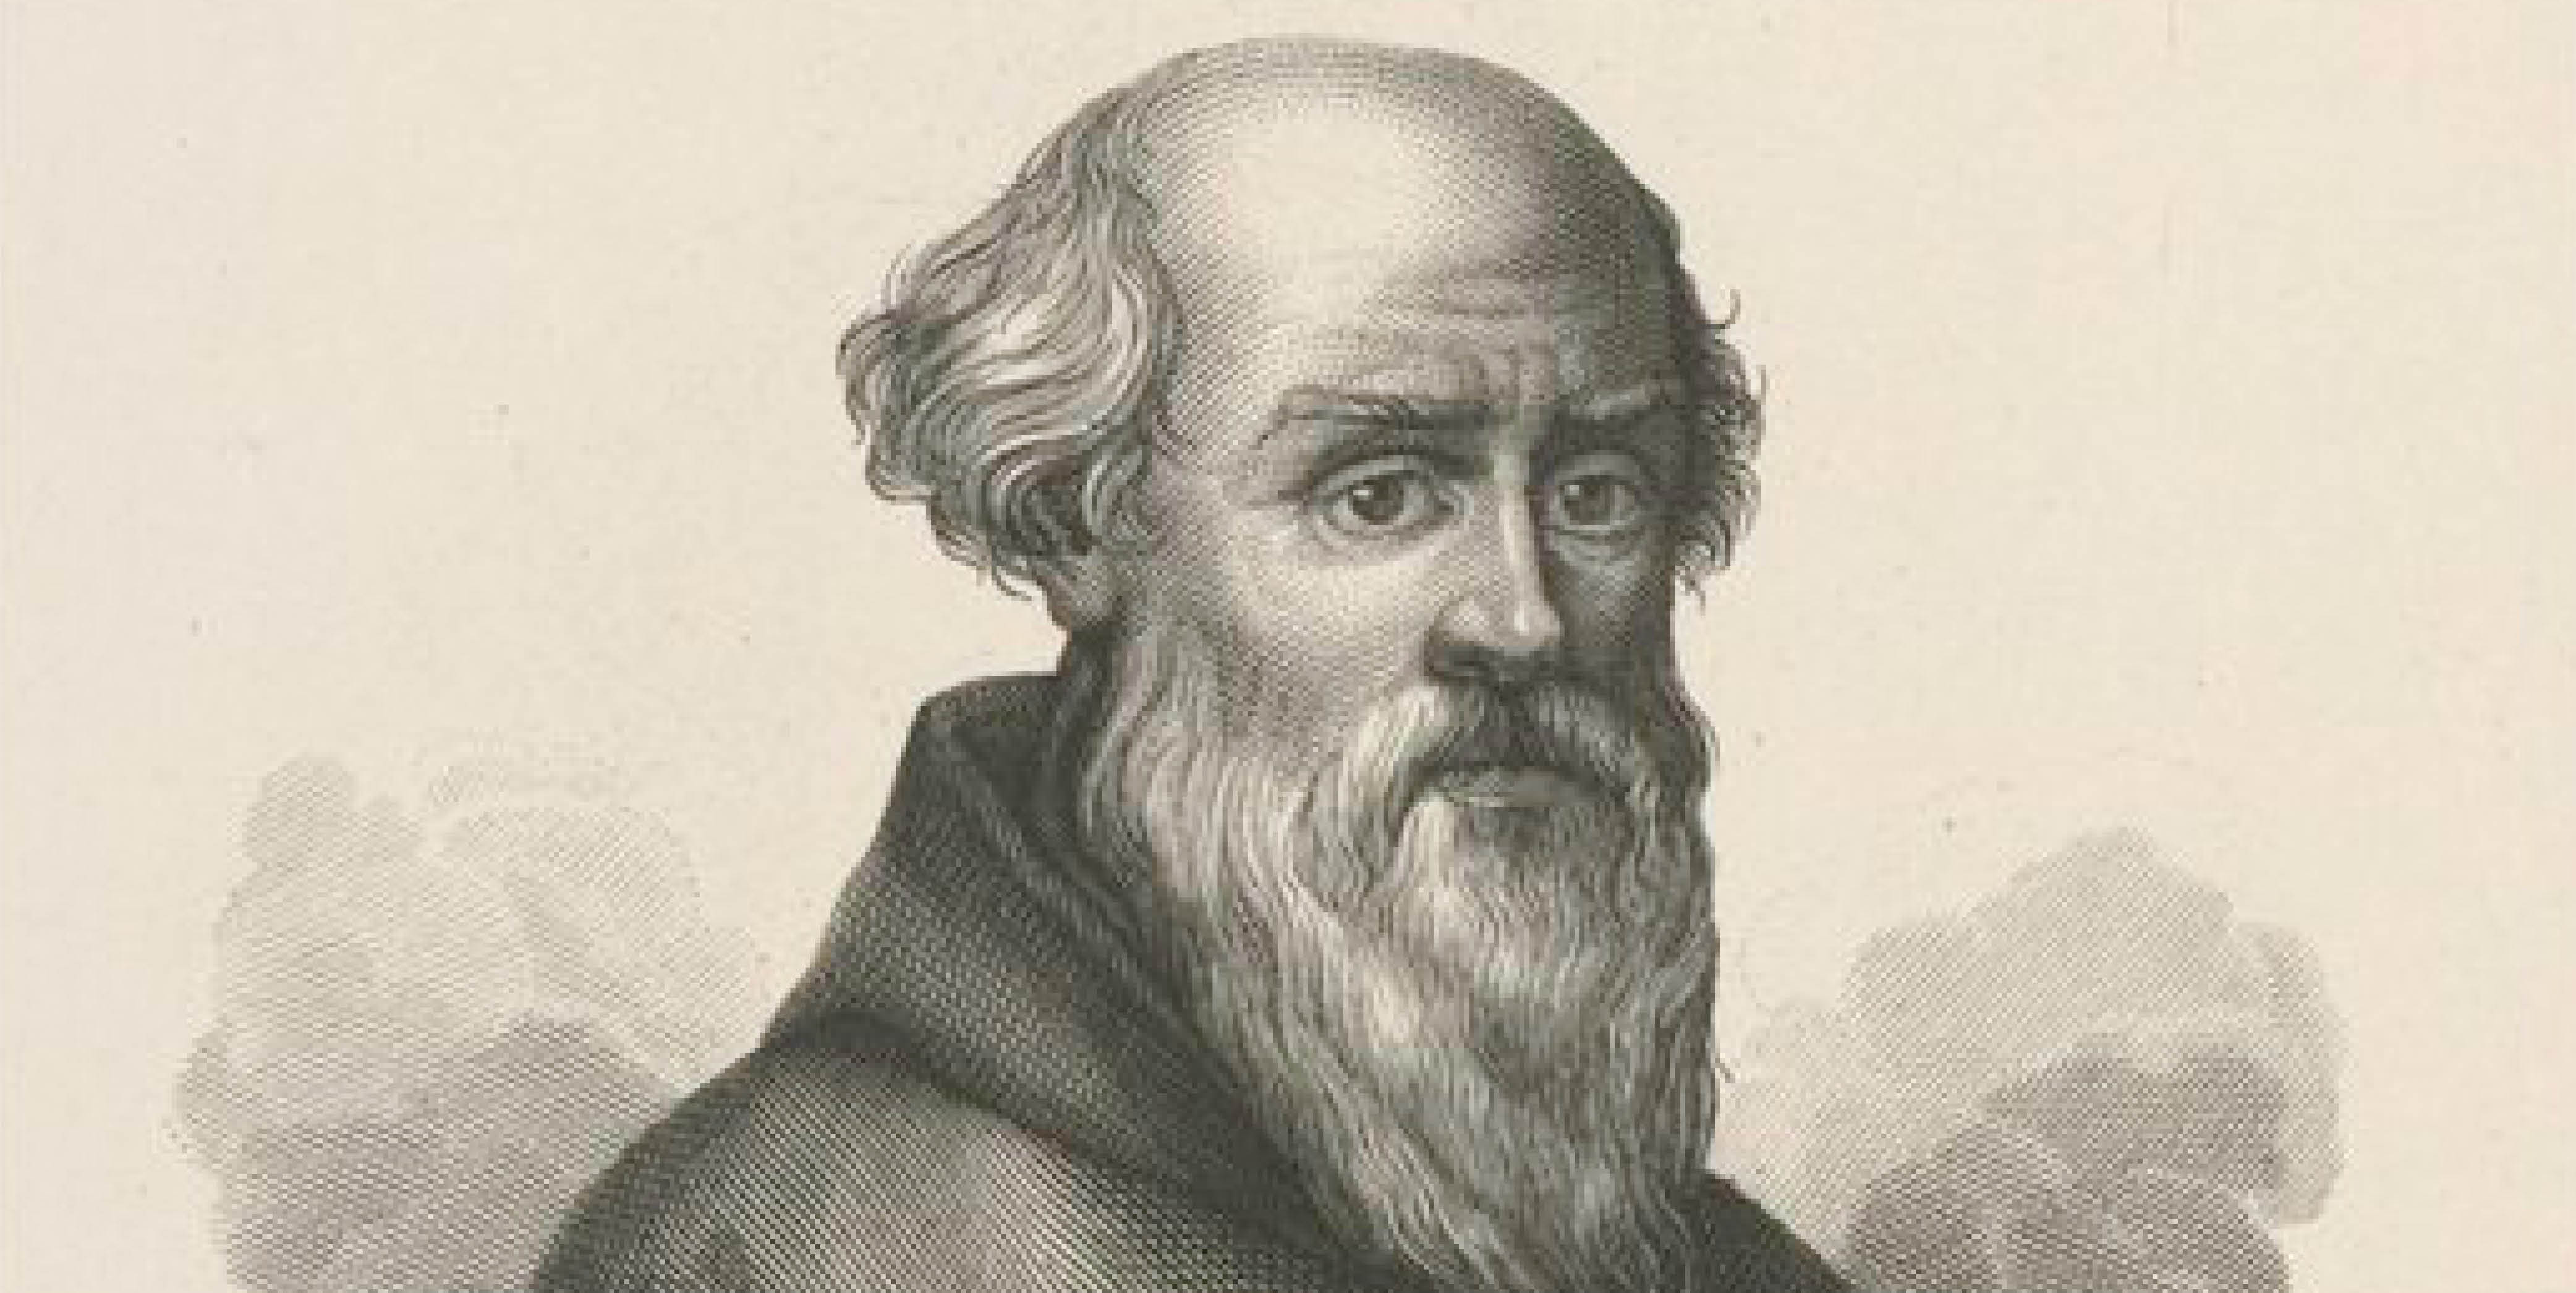 Guido d'Arezzo invented